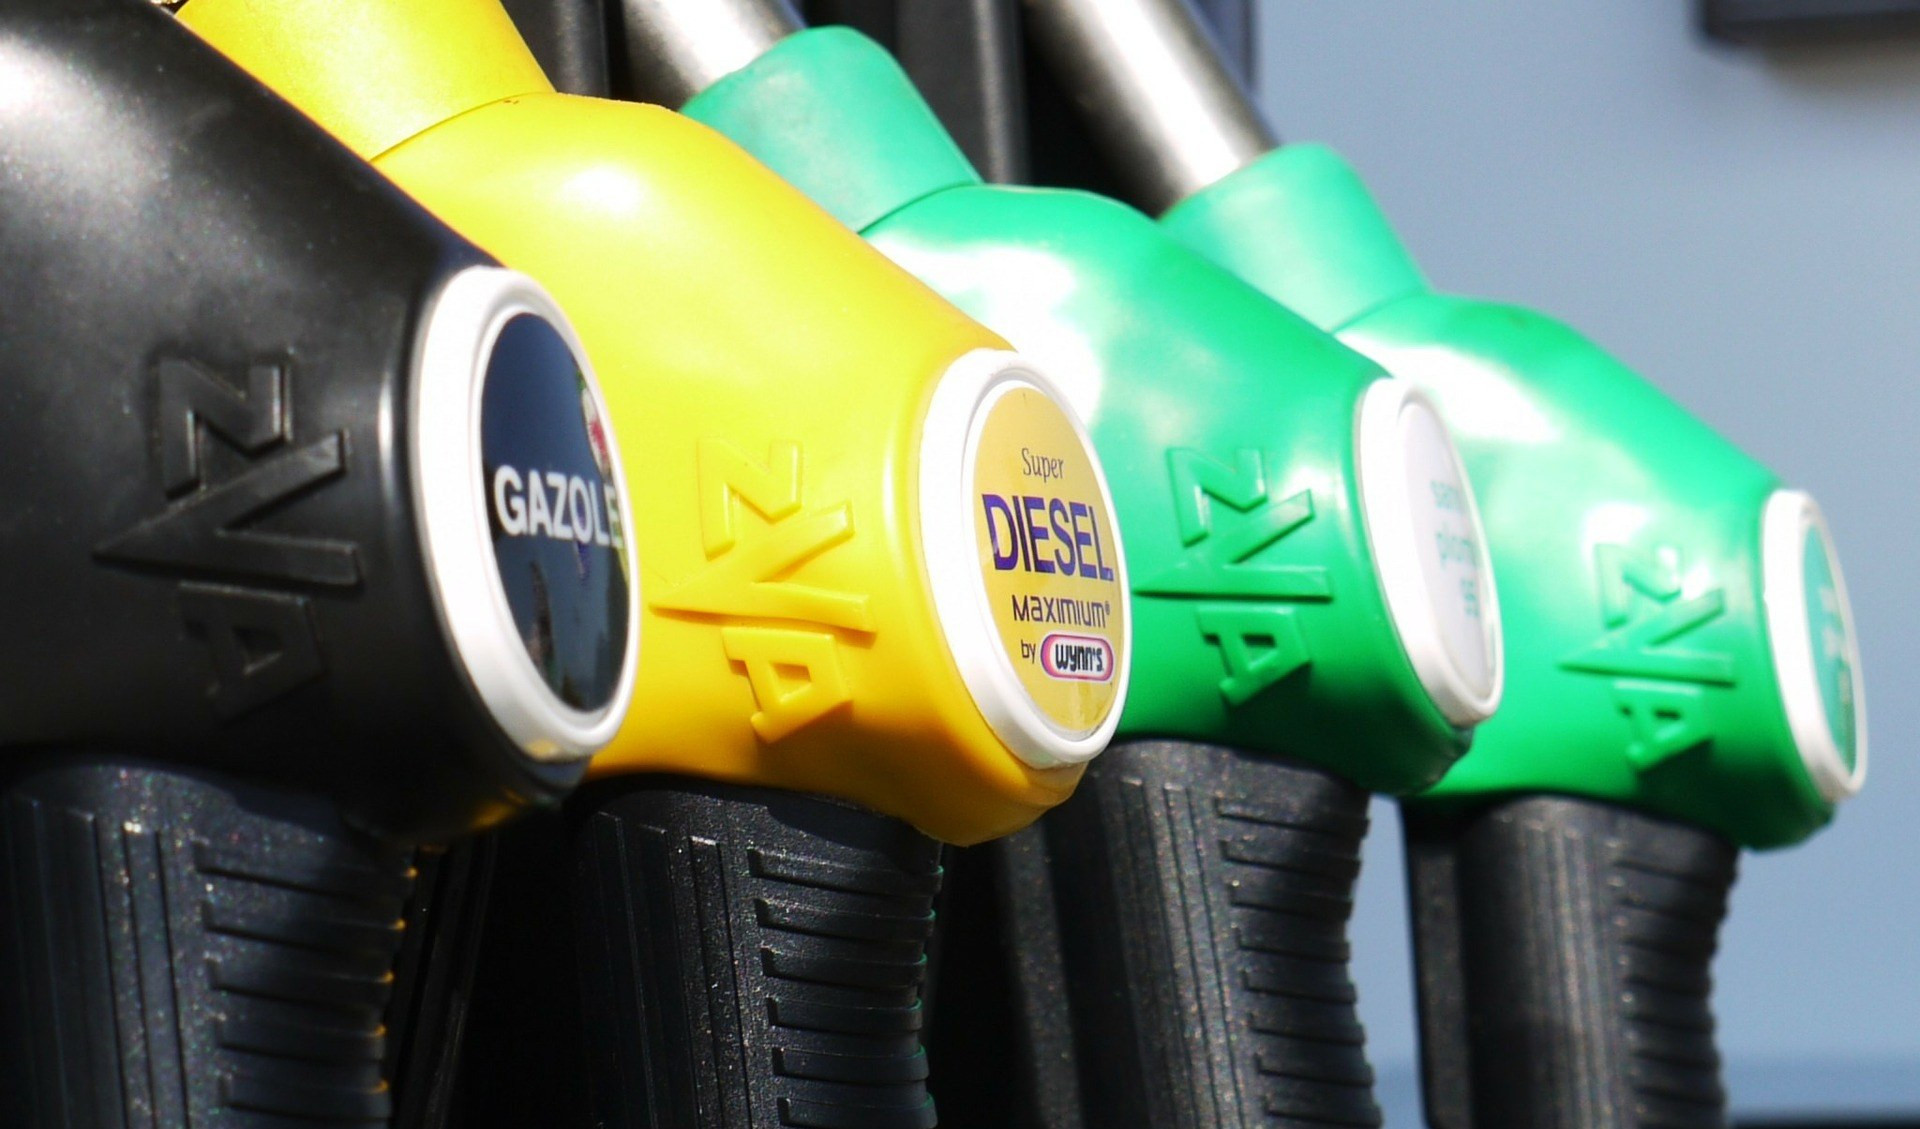 Benzinai, associazioni di categoria unite contro contratti di appalto illegali